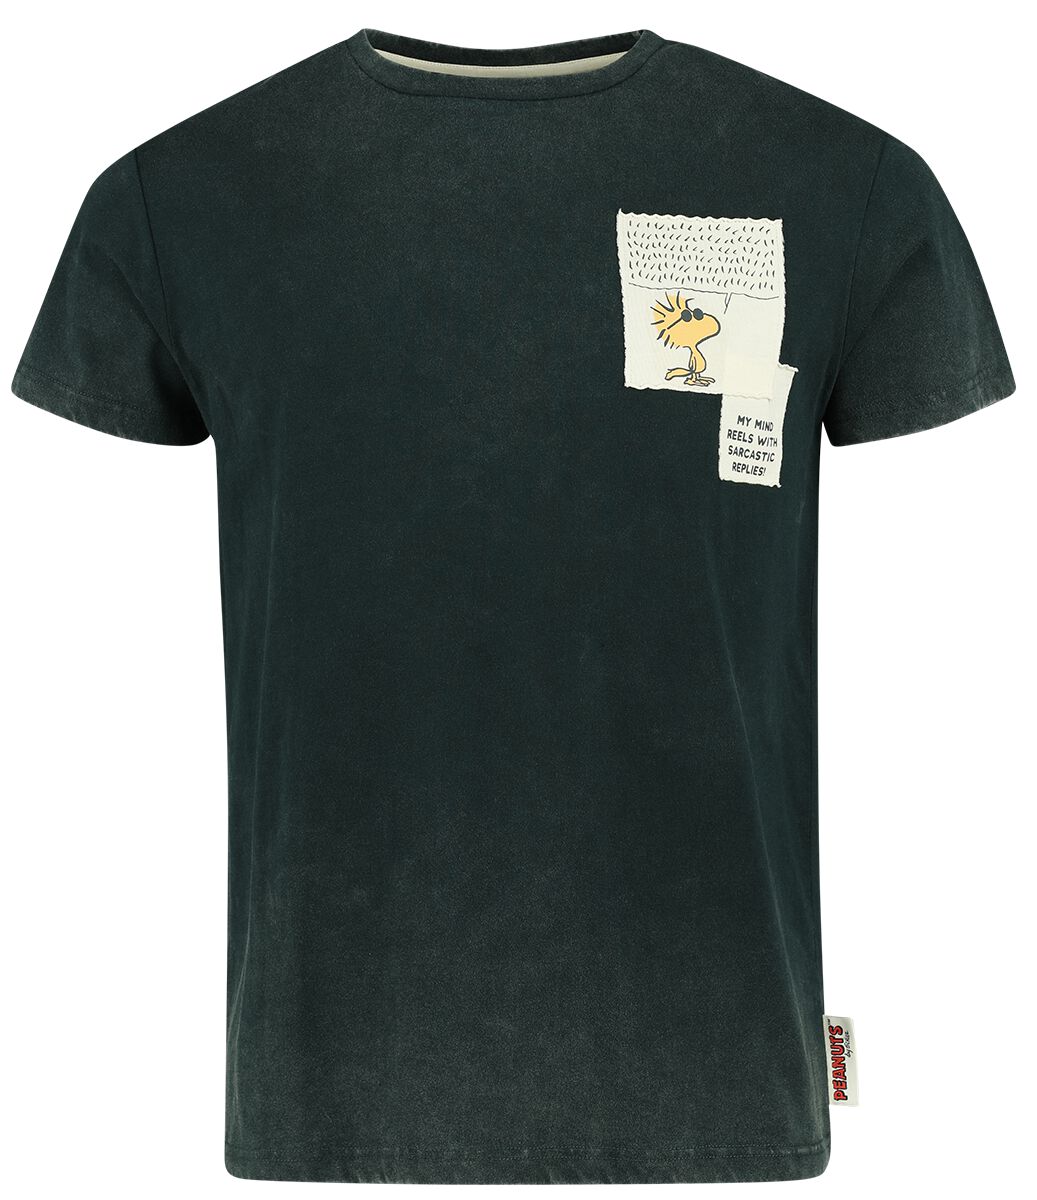 Peanuts T-Shirt - The Sarcasm Society - S bis XXL - für Männer - Größe XL - dunkelgrün  - EMP exklusives Merchandise!